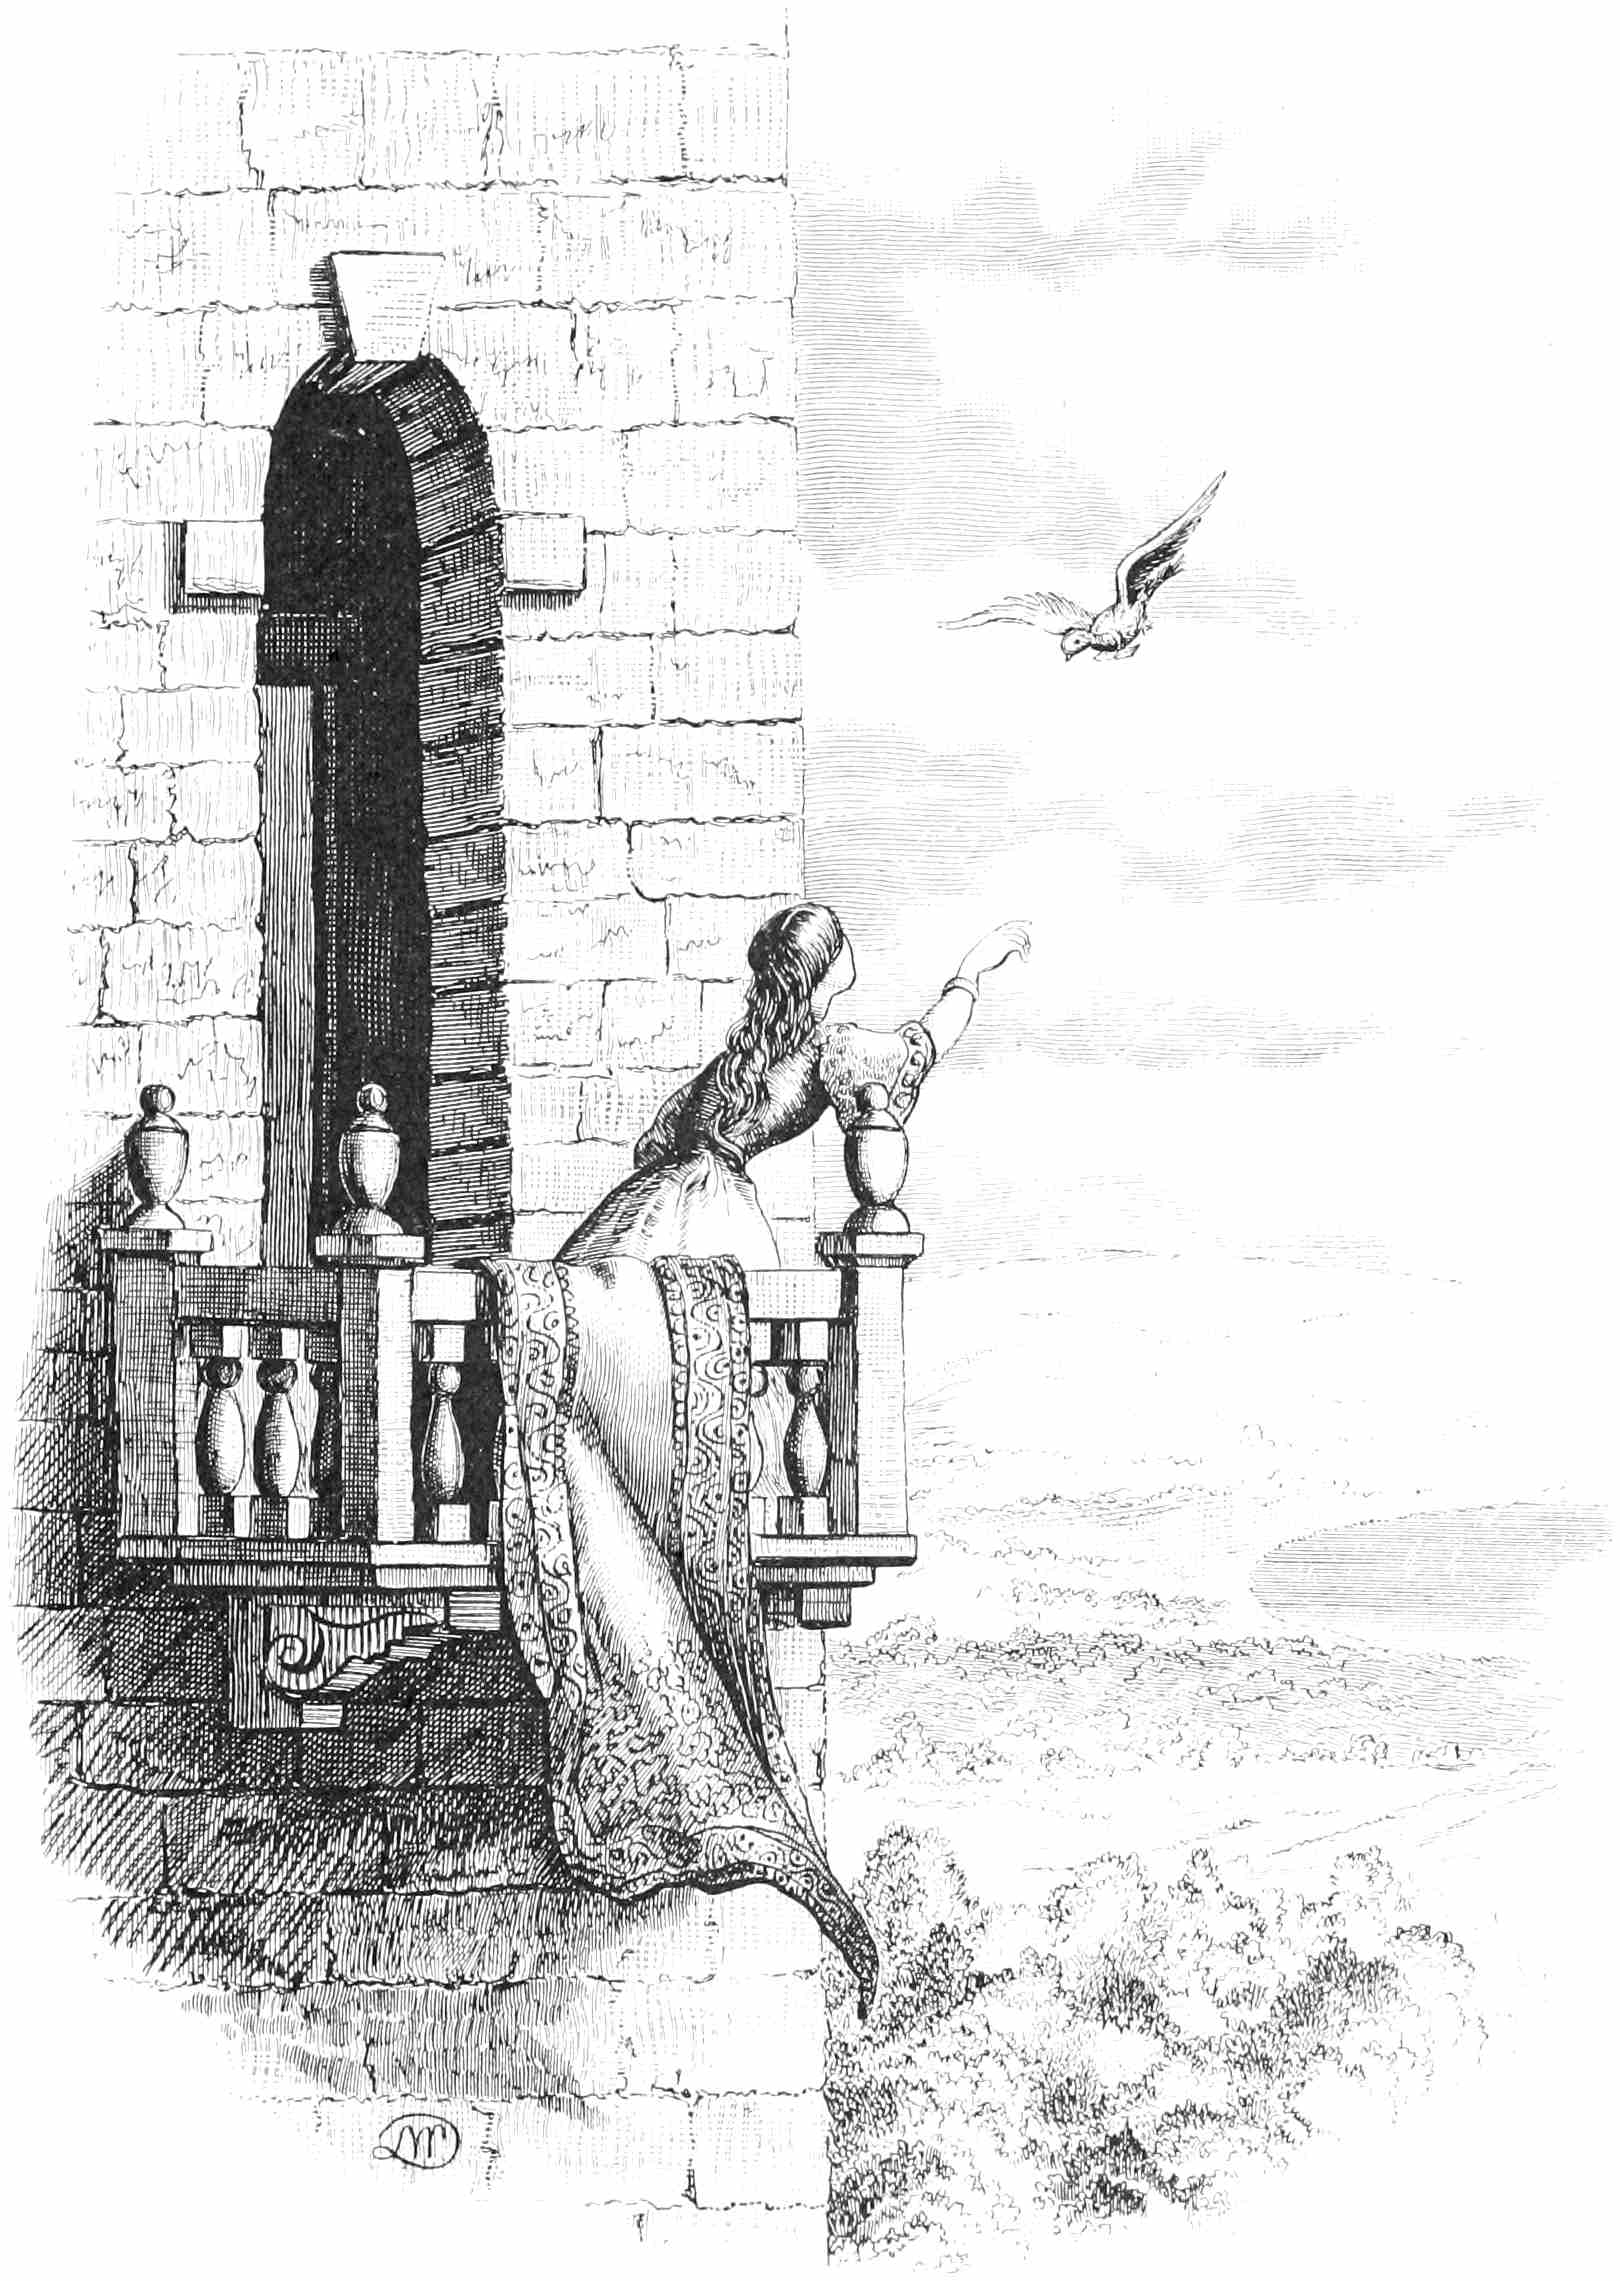 Woman on castle balcony